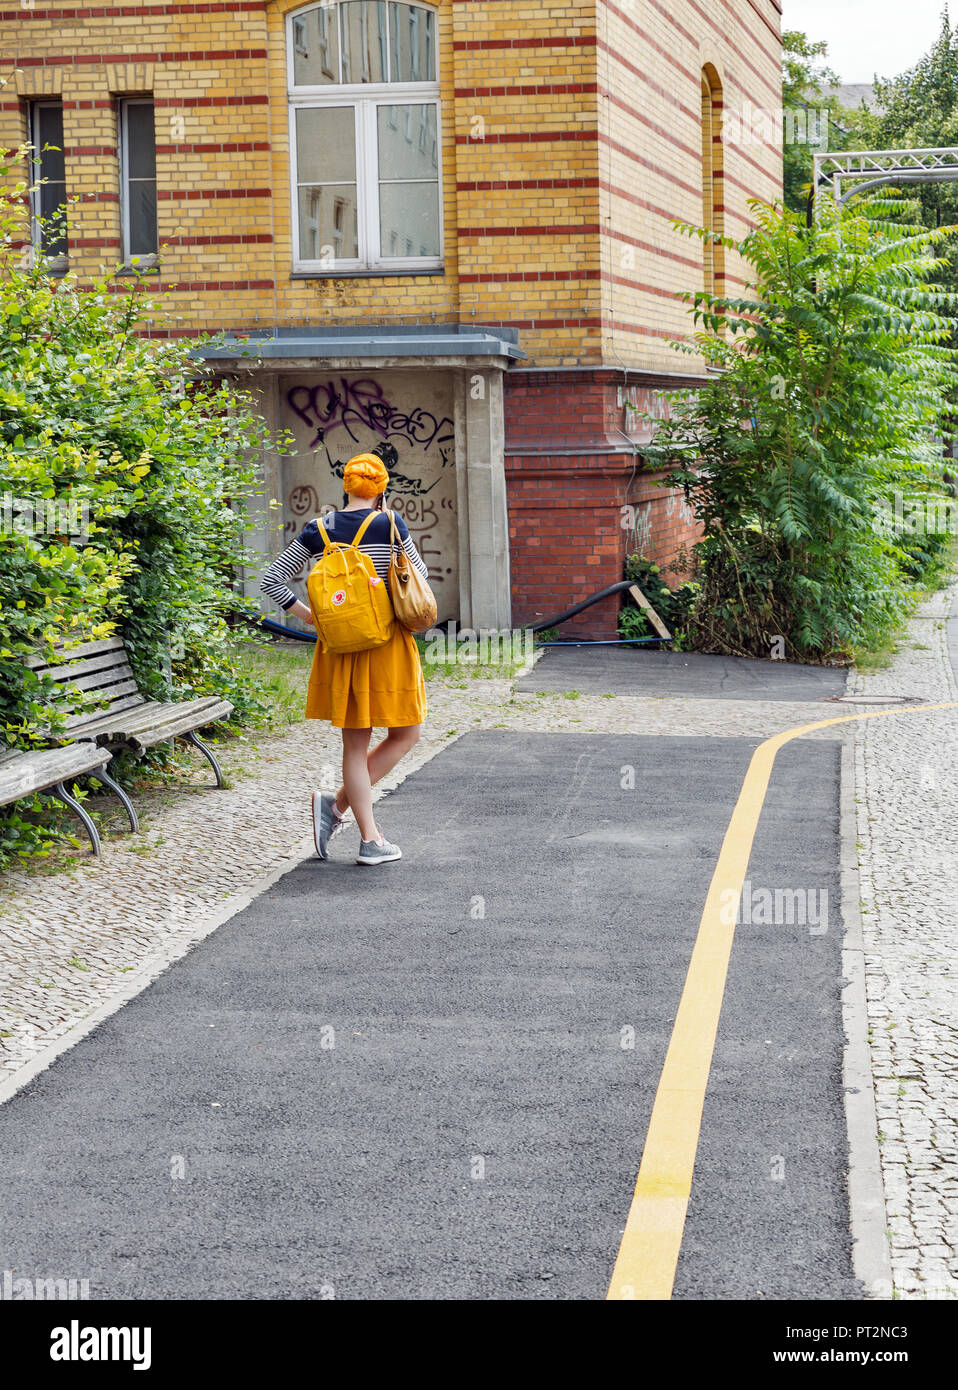 Berlino, Germania - 13 luglio 2018: scena urbana con la giovane donna con peli di colore giallo, zaino vestito di mantello giallo si erge davanti casa gialla e Foto Stock